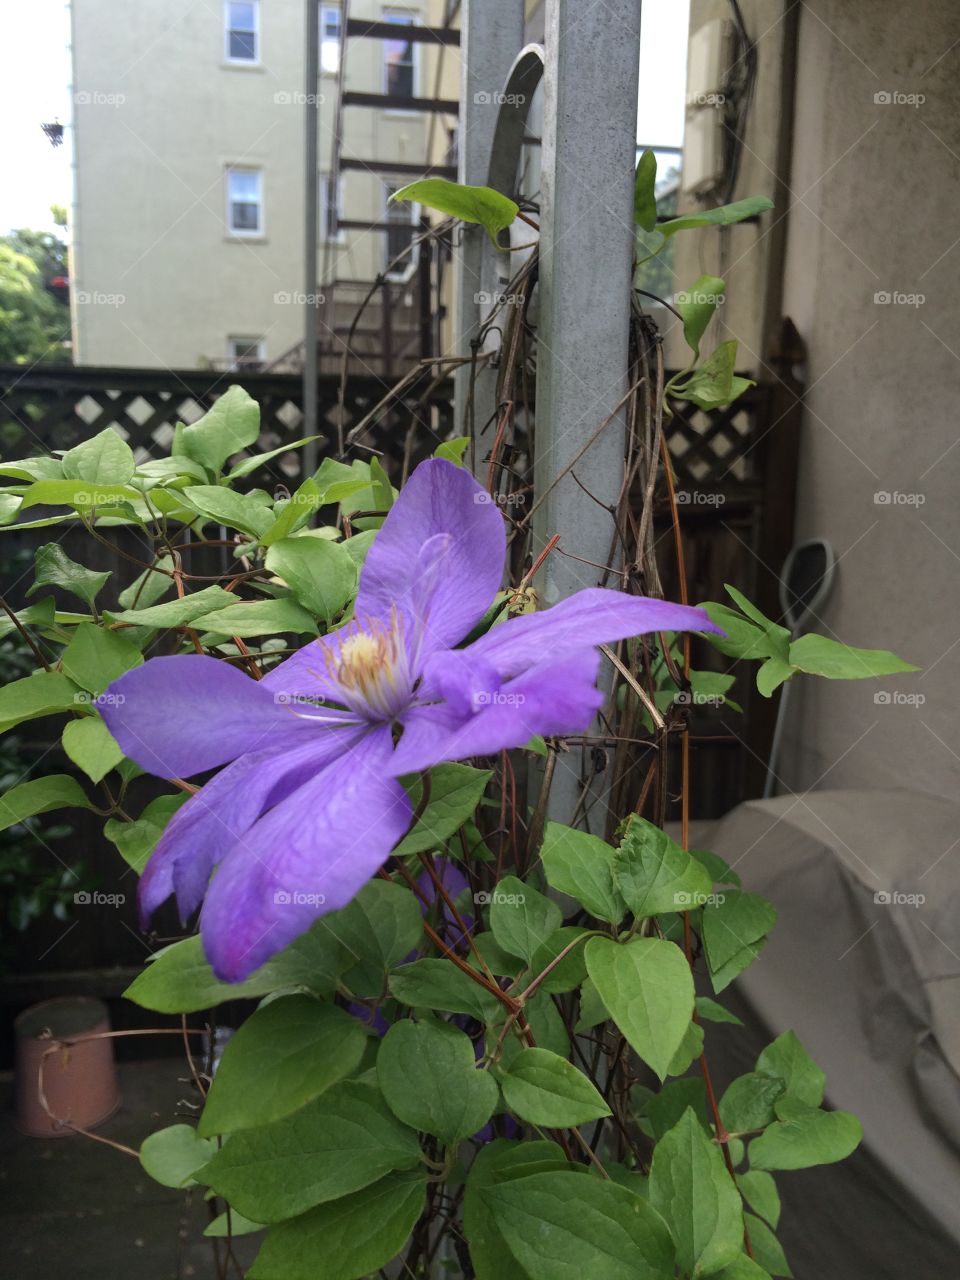 Clematis flower in urban garden